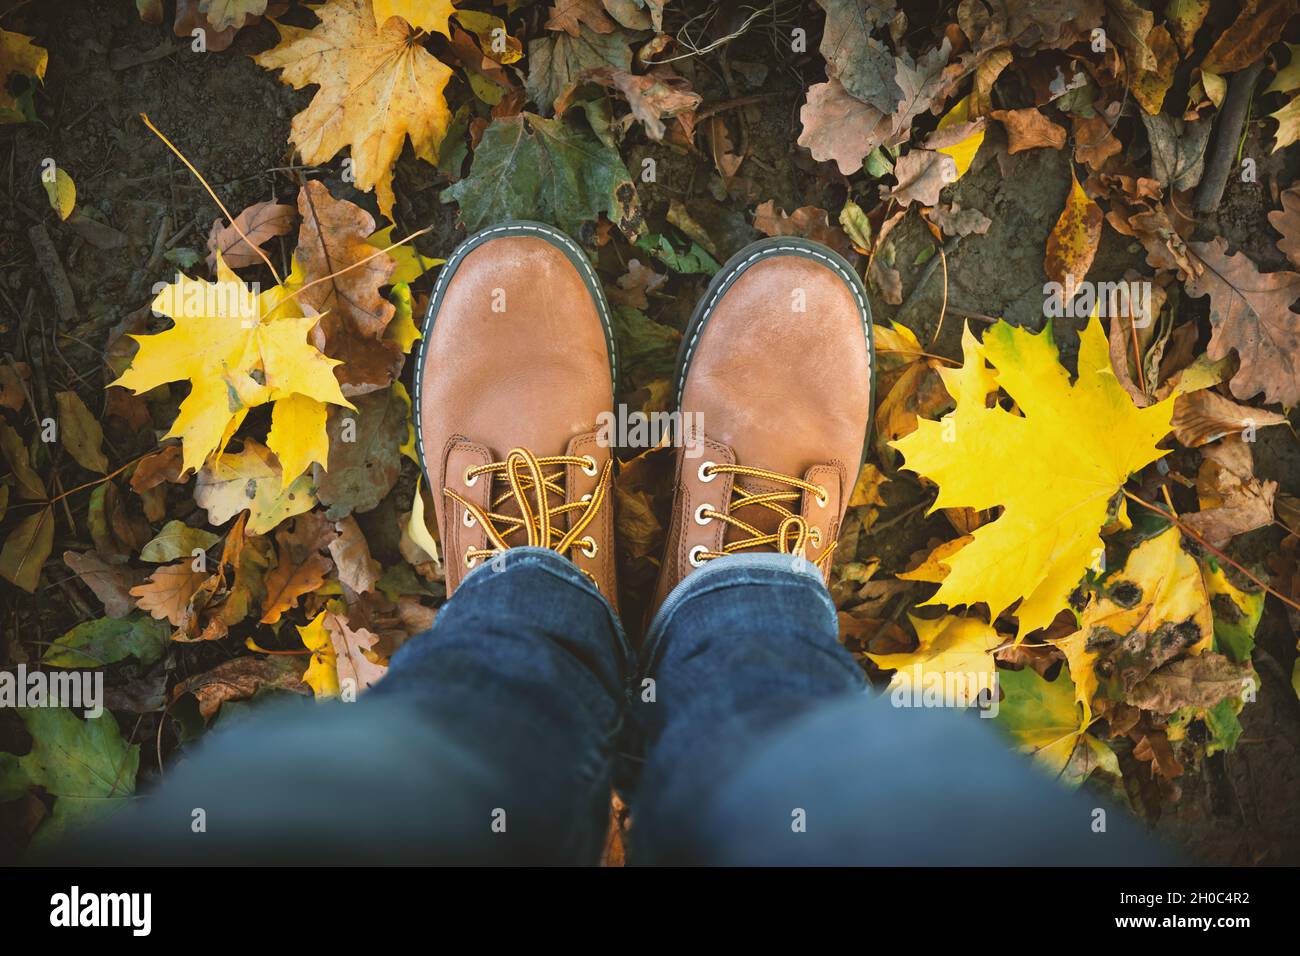 Hommes jambes en Jean et bottes en cuir marron sur le terrain de parc avec des feuilles d'érable déchue colorées autour.Concept de l'automne saison d'automne et mode de vie des vêtements taille basse tendance Banque D'Images